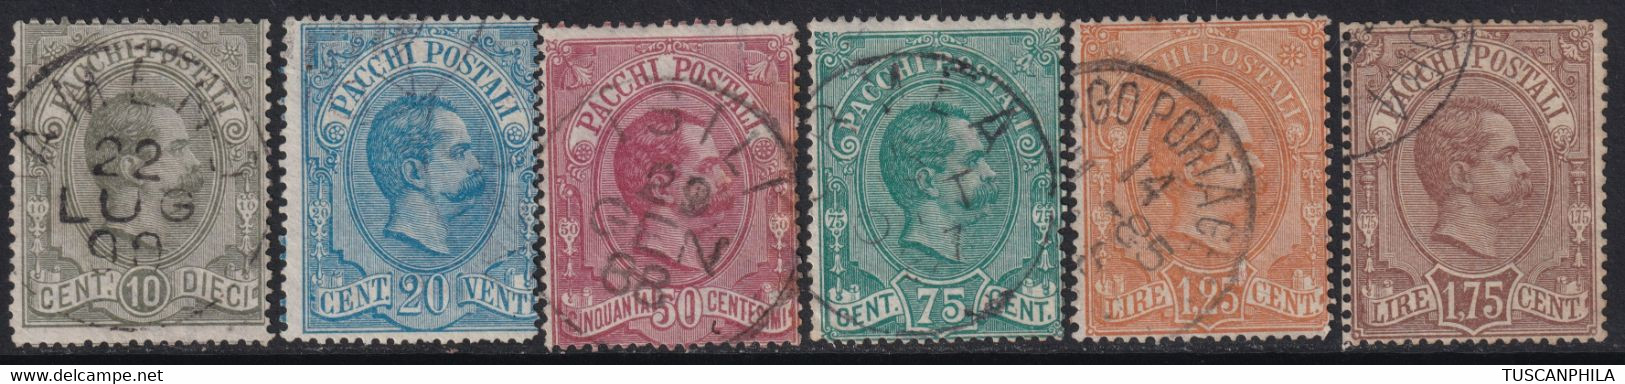 1884/86 - Umberto Pacchi Postali Serie Completa Usata F.Ray, Colla - Sassone S.2100 - Pacchi Postali